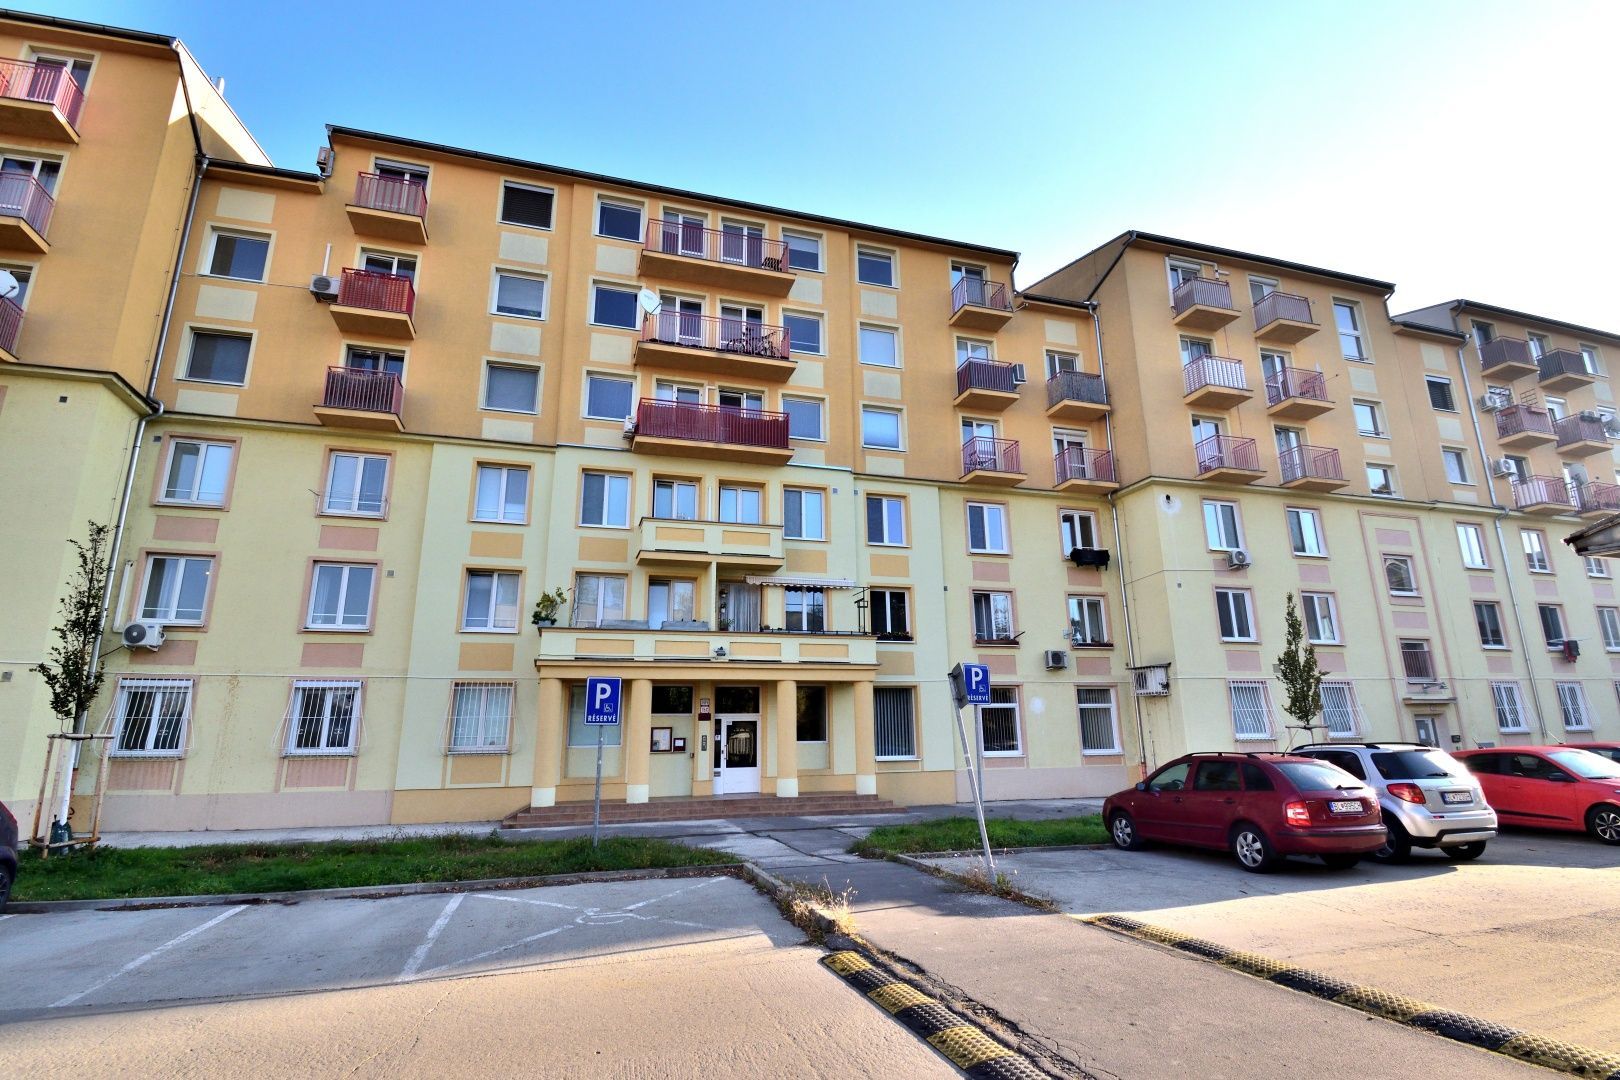 PRENÁJOM: 2 izb. byt. Doležalova 15, Trnávka, Bratislava II – NADSTAVBA – TOP PONUKA 3405 | Roweservices s.r.o